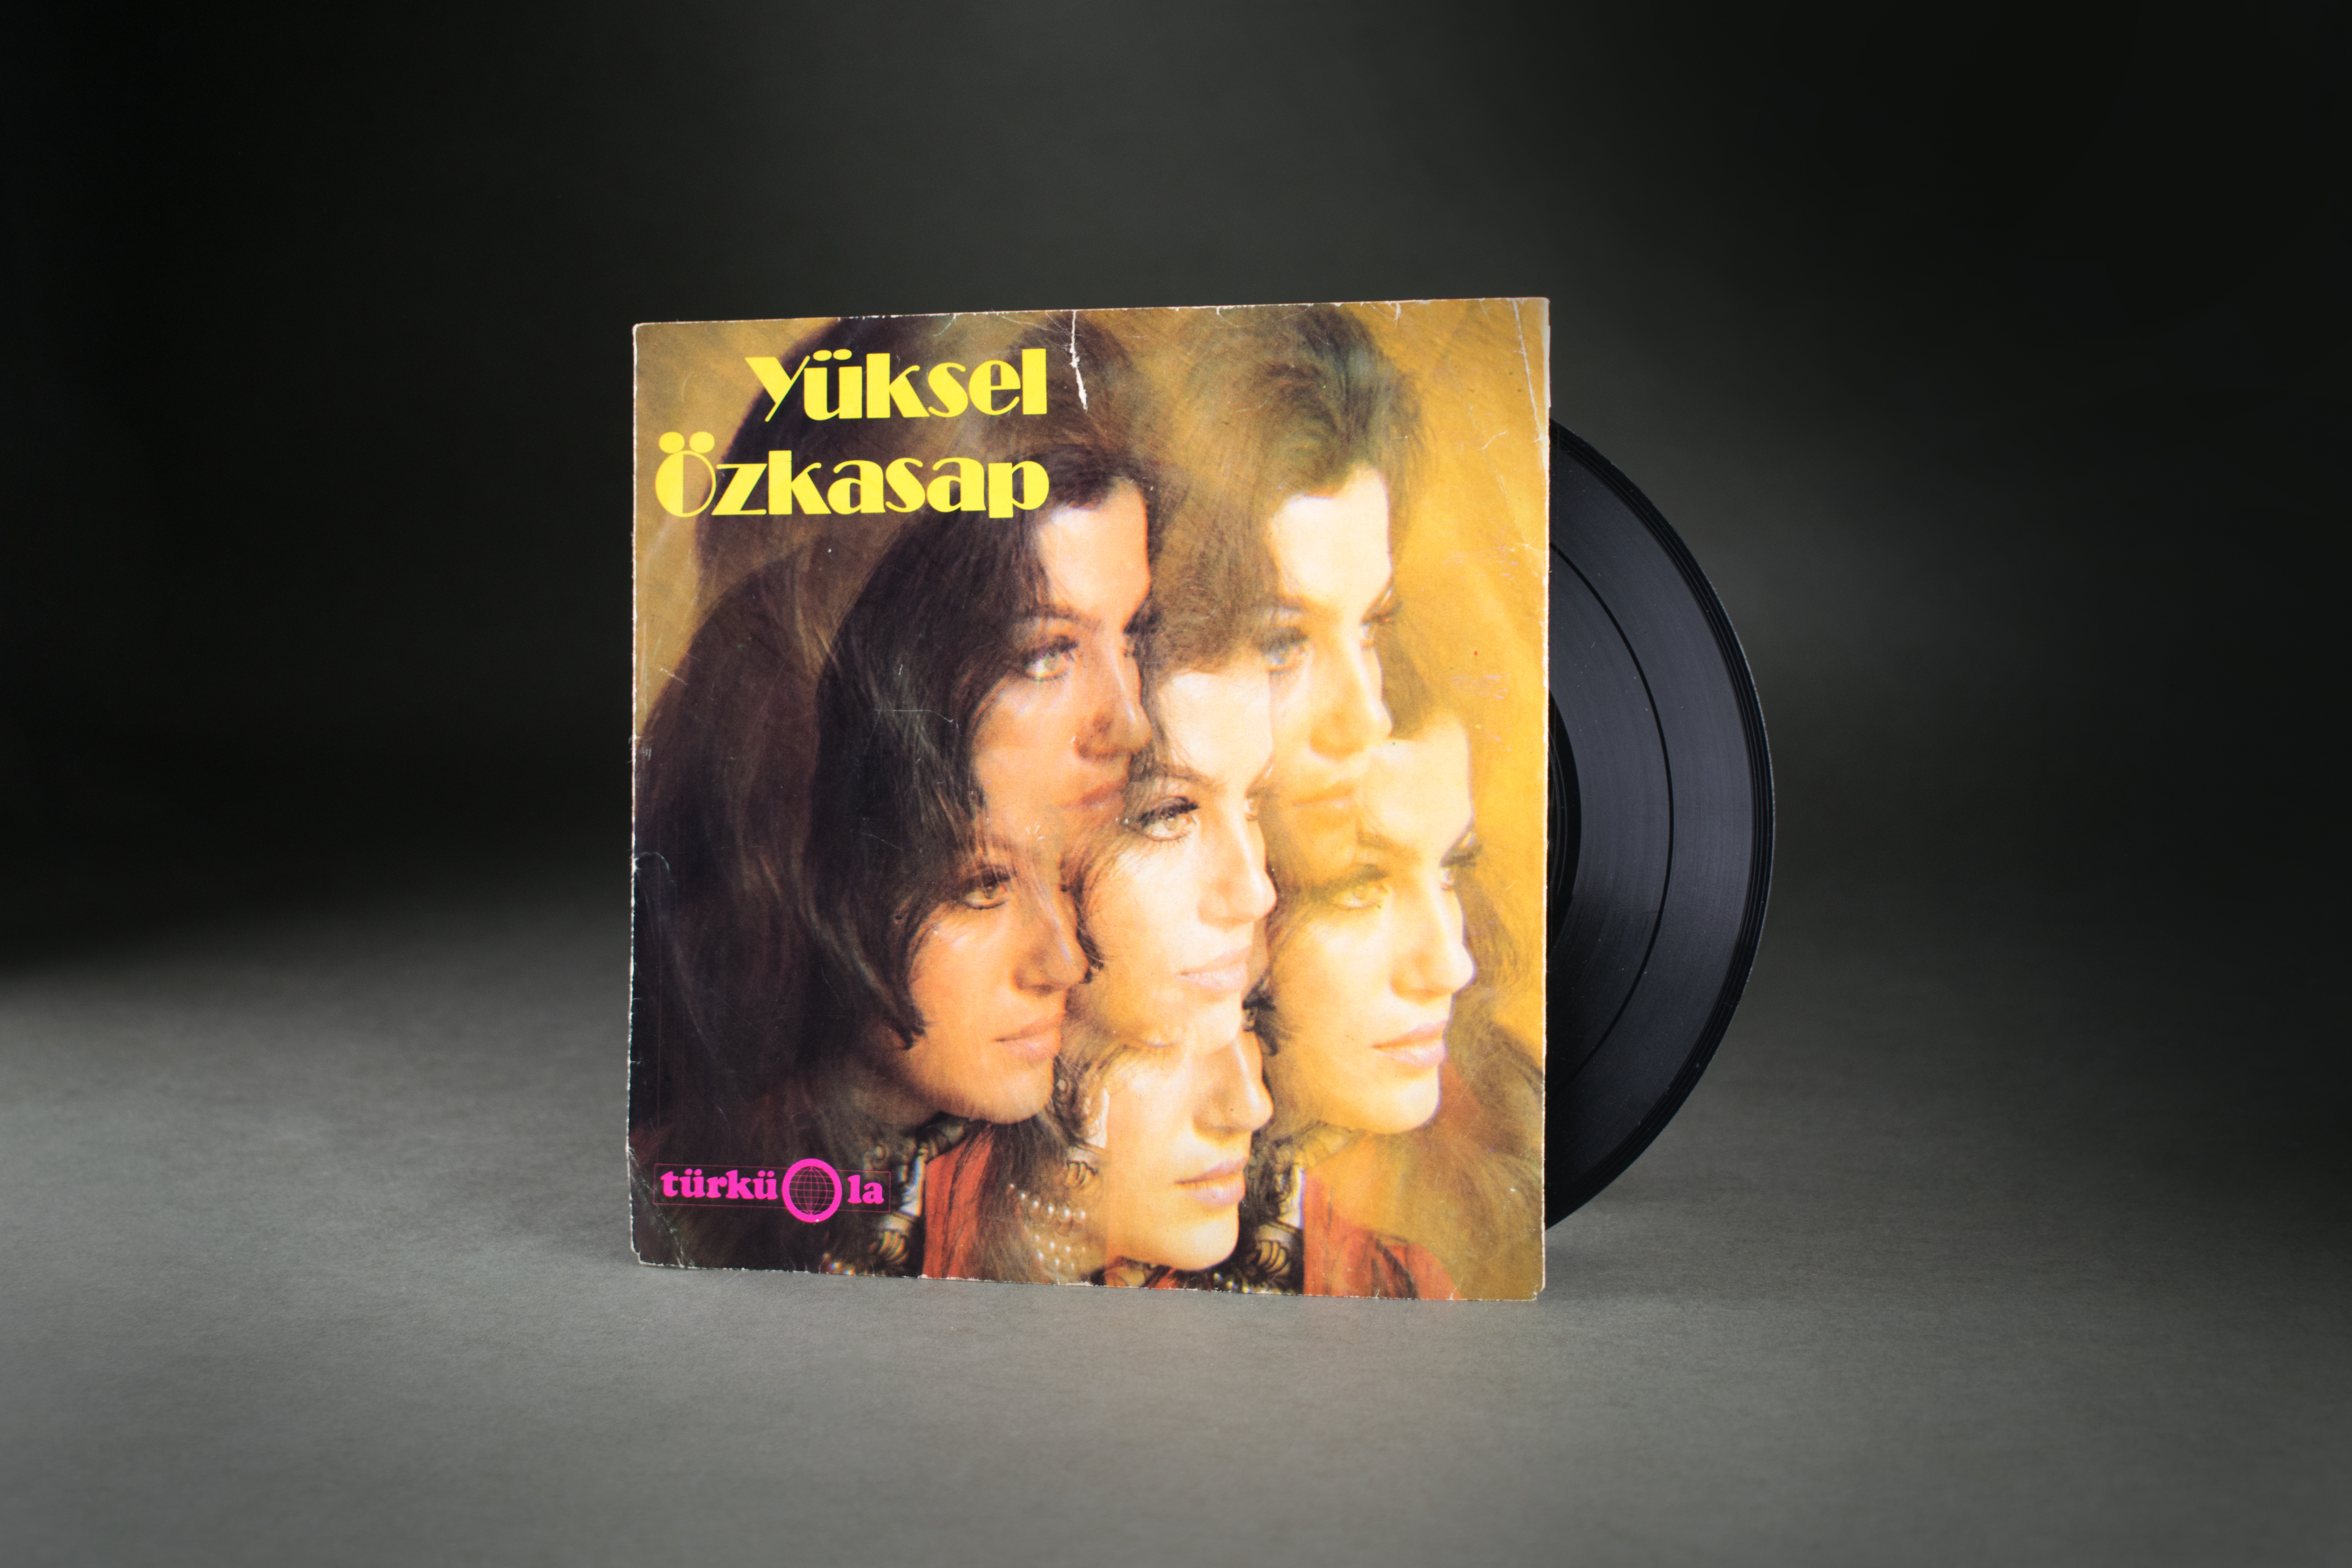 Single von Yüksel Özkasap auf dem Label Türküola, 1968: Yüksel Özkasap kam als Fabrikarbeiterin nach Velbert und arbeitete in der Schlüsselfabrik Stannay, wo sie nebenbei zu singen begann. Daraus entwickelte sich eine Musikkarriere, die ihr von ihren Fans den Beinamen „Köln Bülbülü“ („Nachtigall von Köln“) einbrachte. Özkasap sang an die 500 „Gurbet Türküleri“ („Volkslieder aus der Fremde“) und brachte über 20 Alben heraus. DOMiD-Archiv, Köln, SD 0130 000